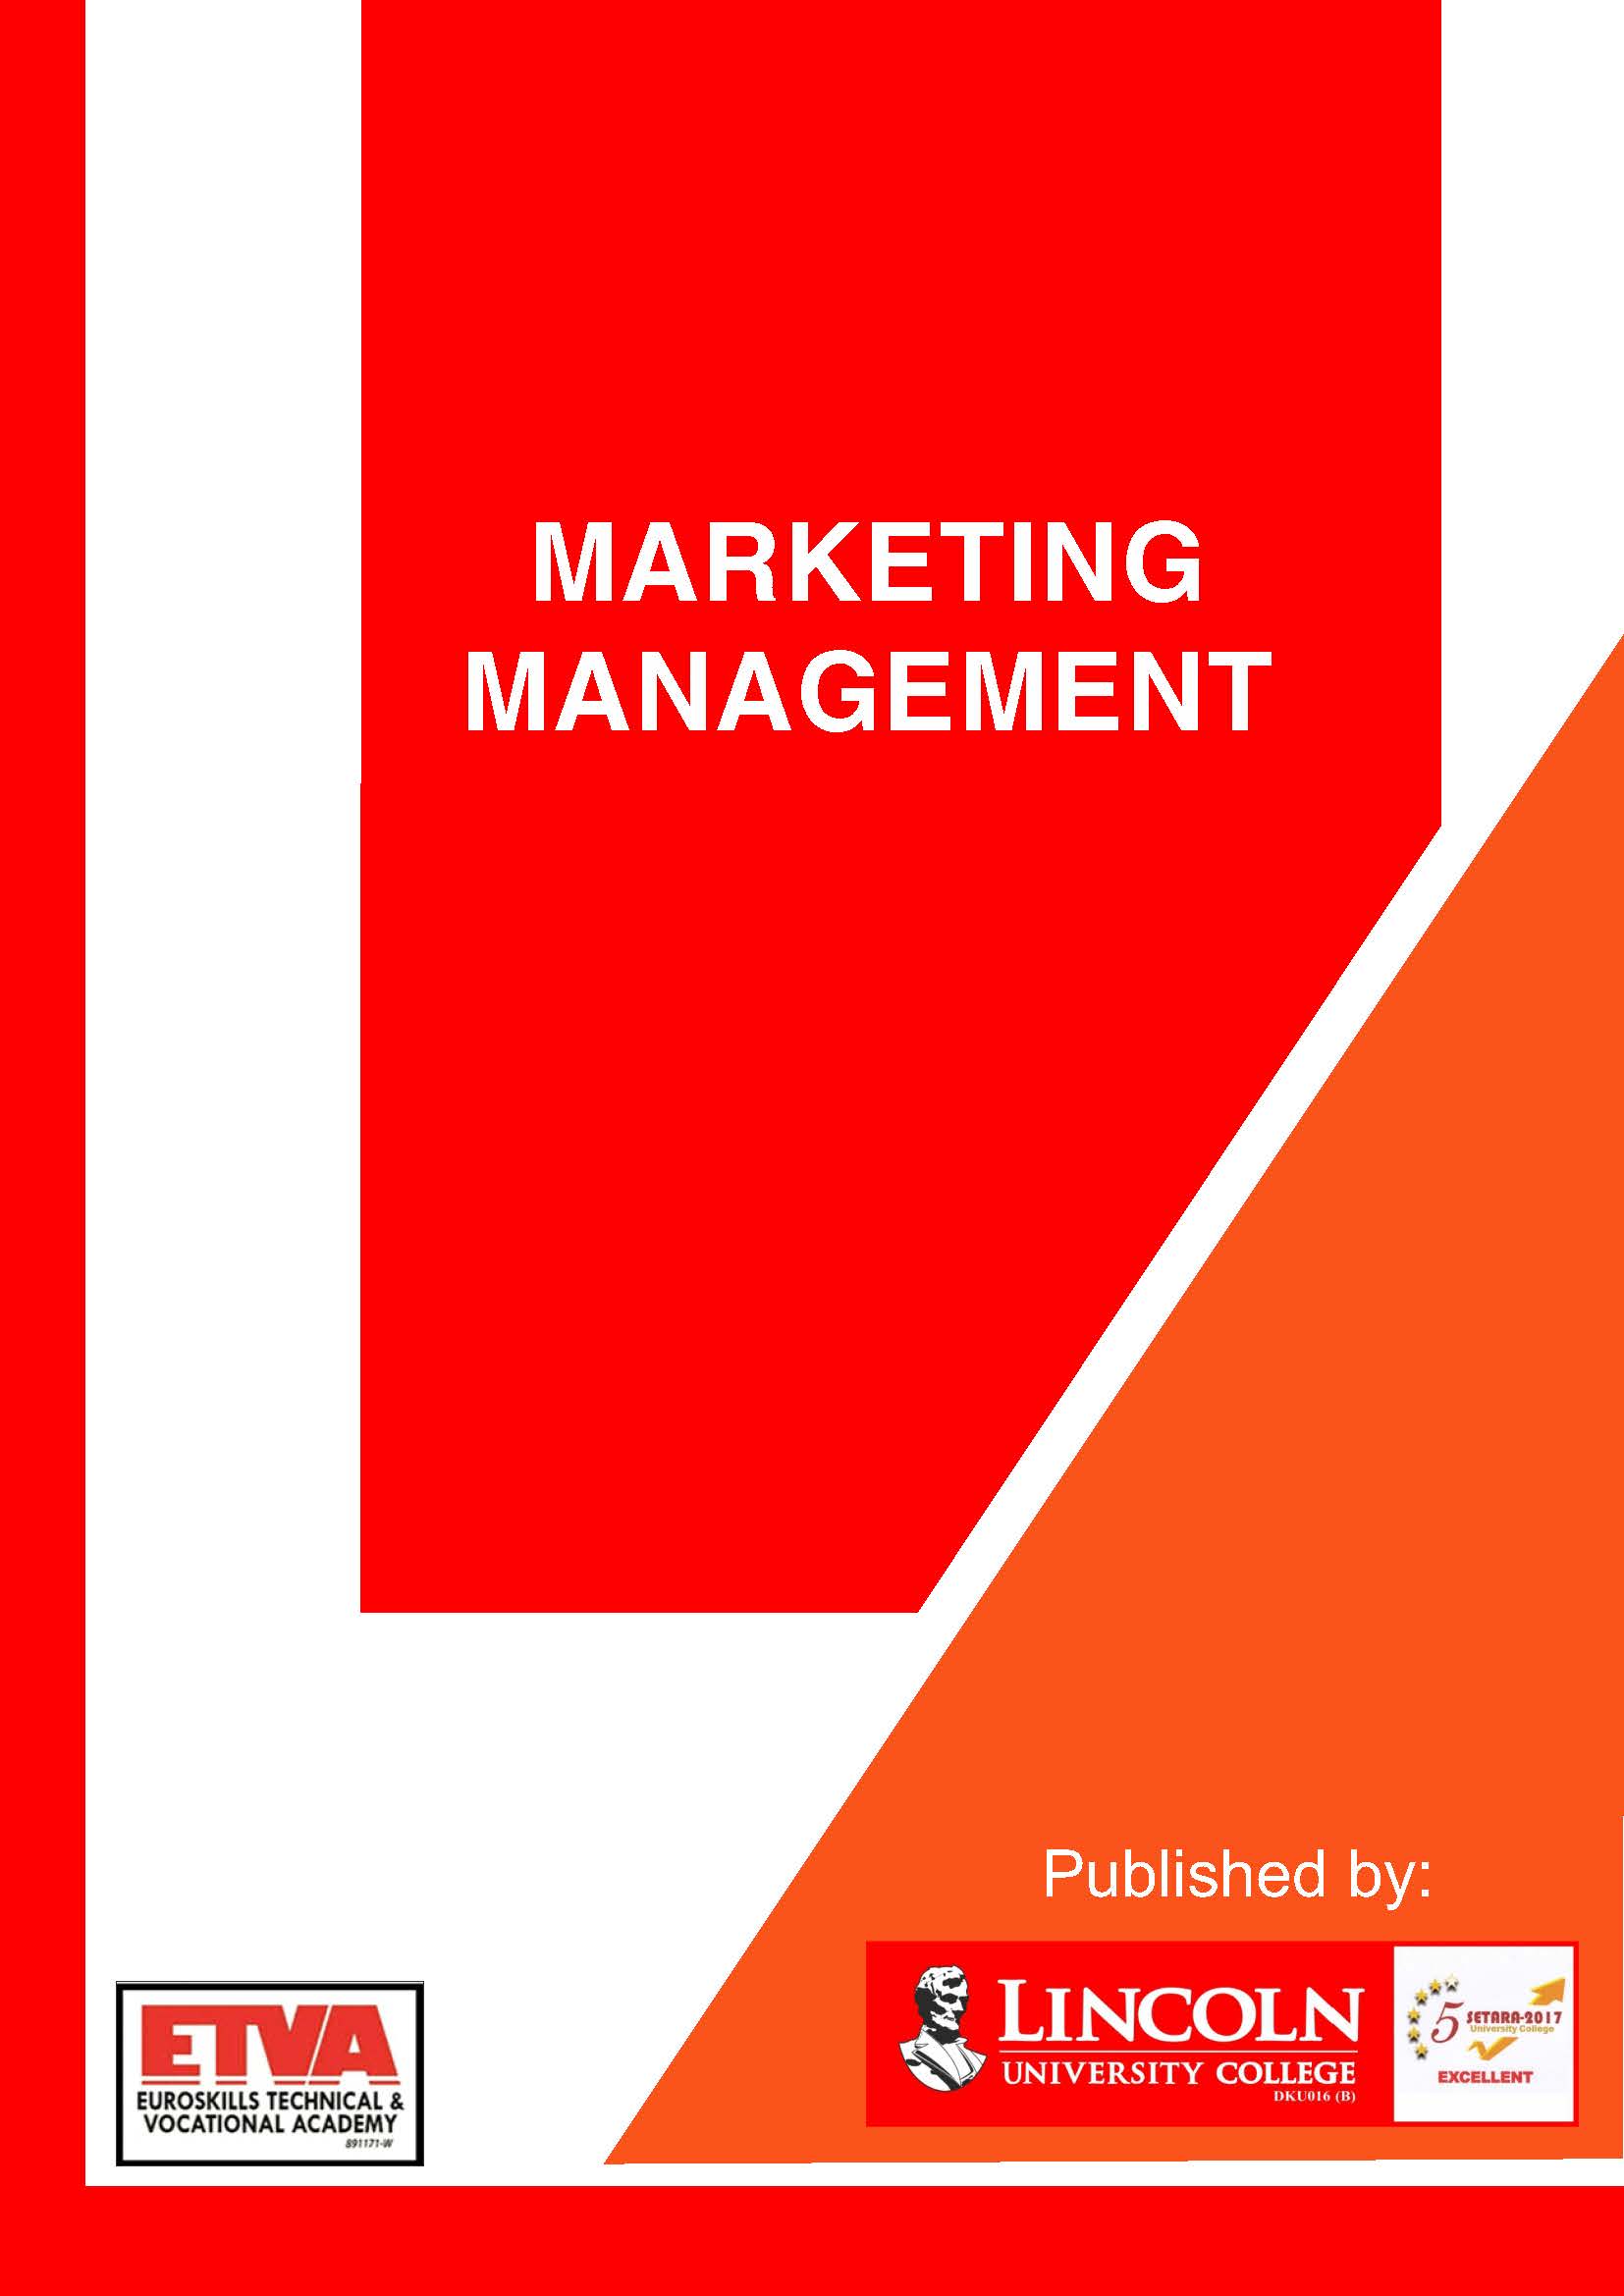 Marketing Management_Prof Exc Dip